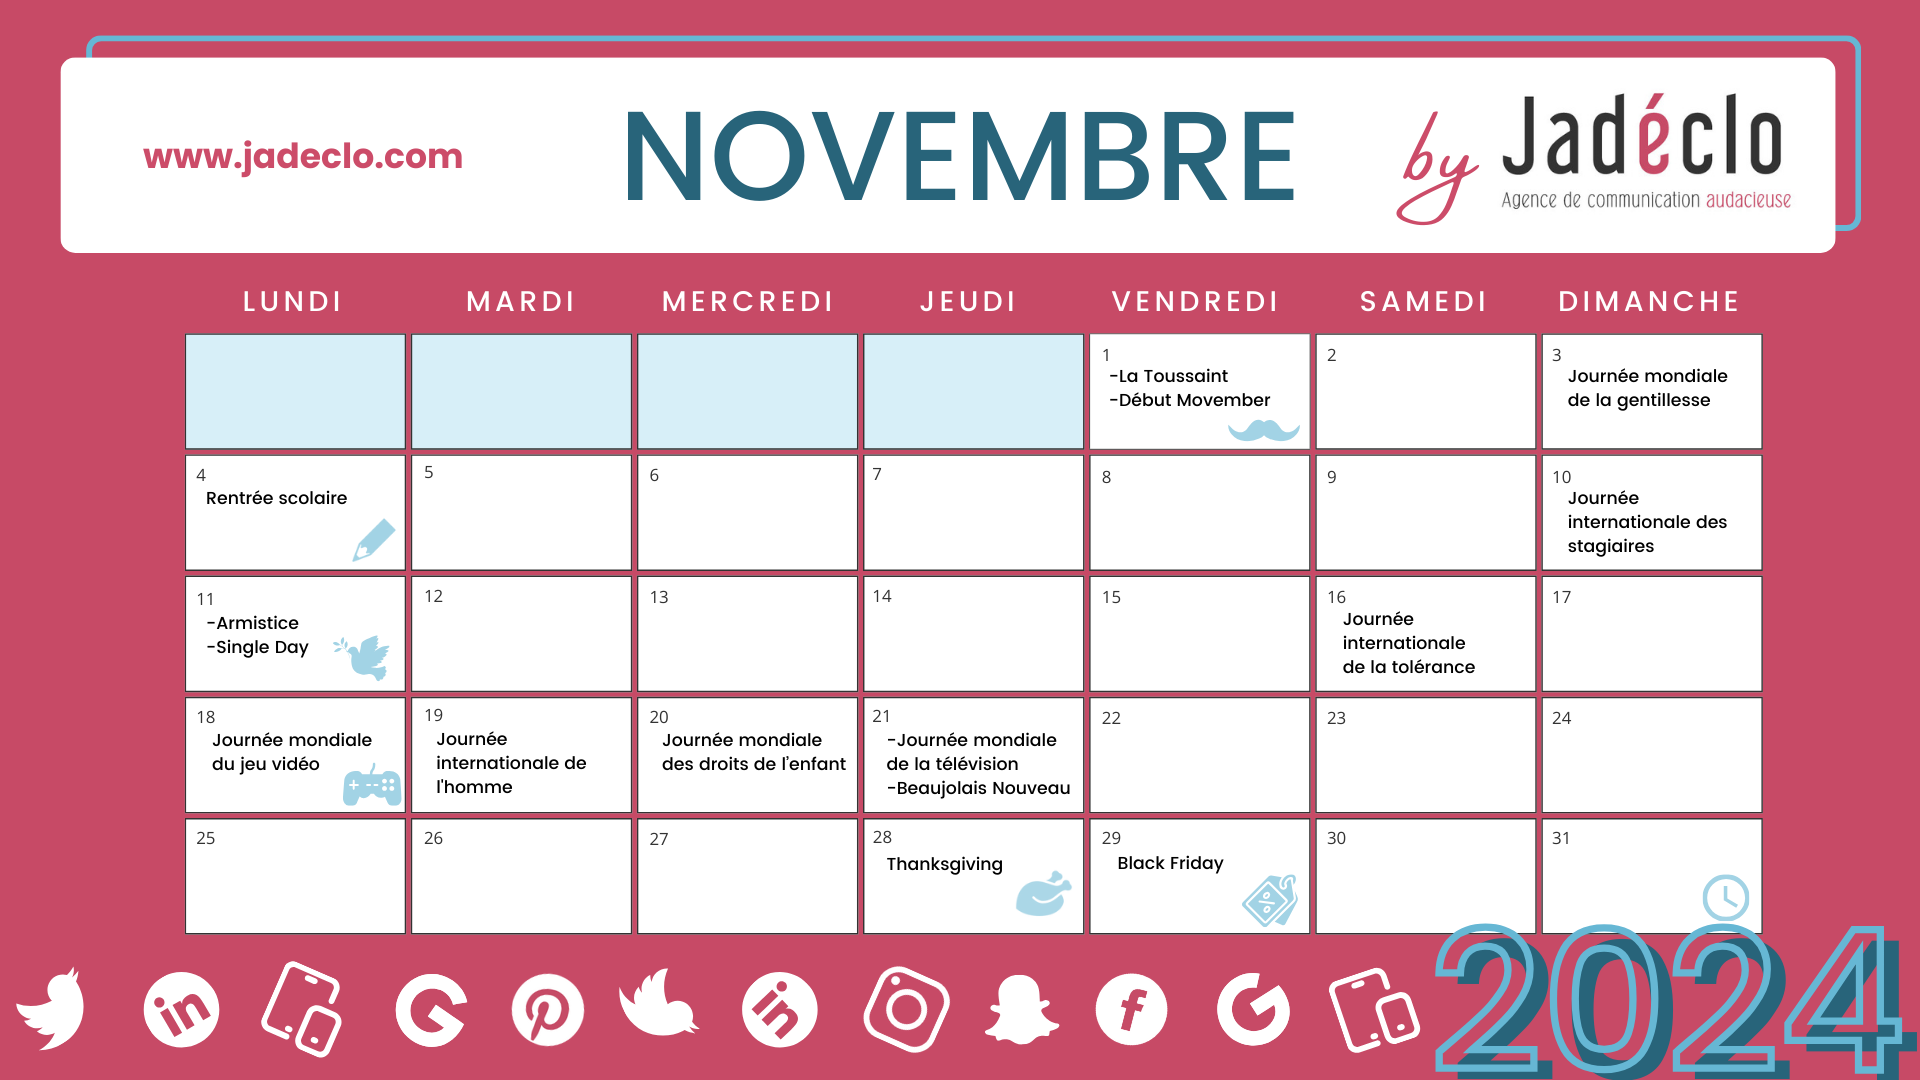 Retrouvez tous les événements clés du mois de novembre grâce à votre calendrier marronnier novembre 2024 !